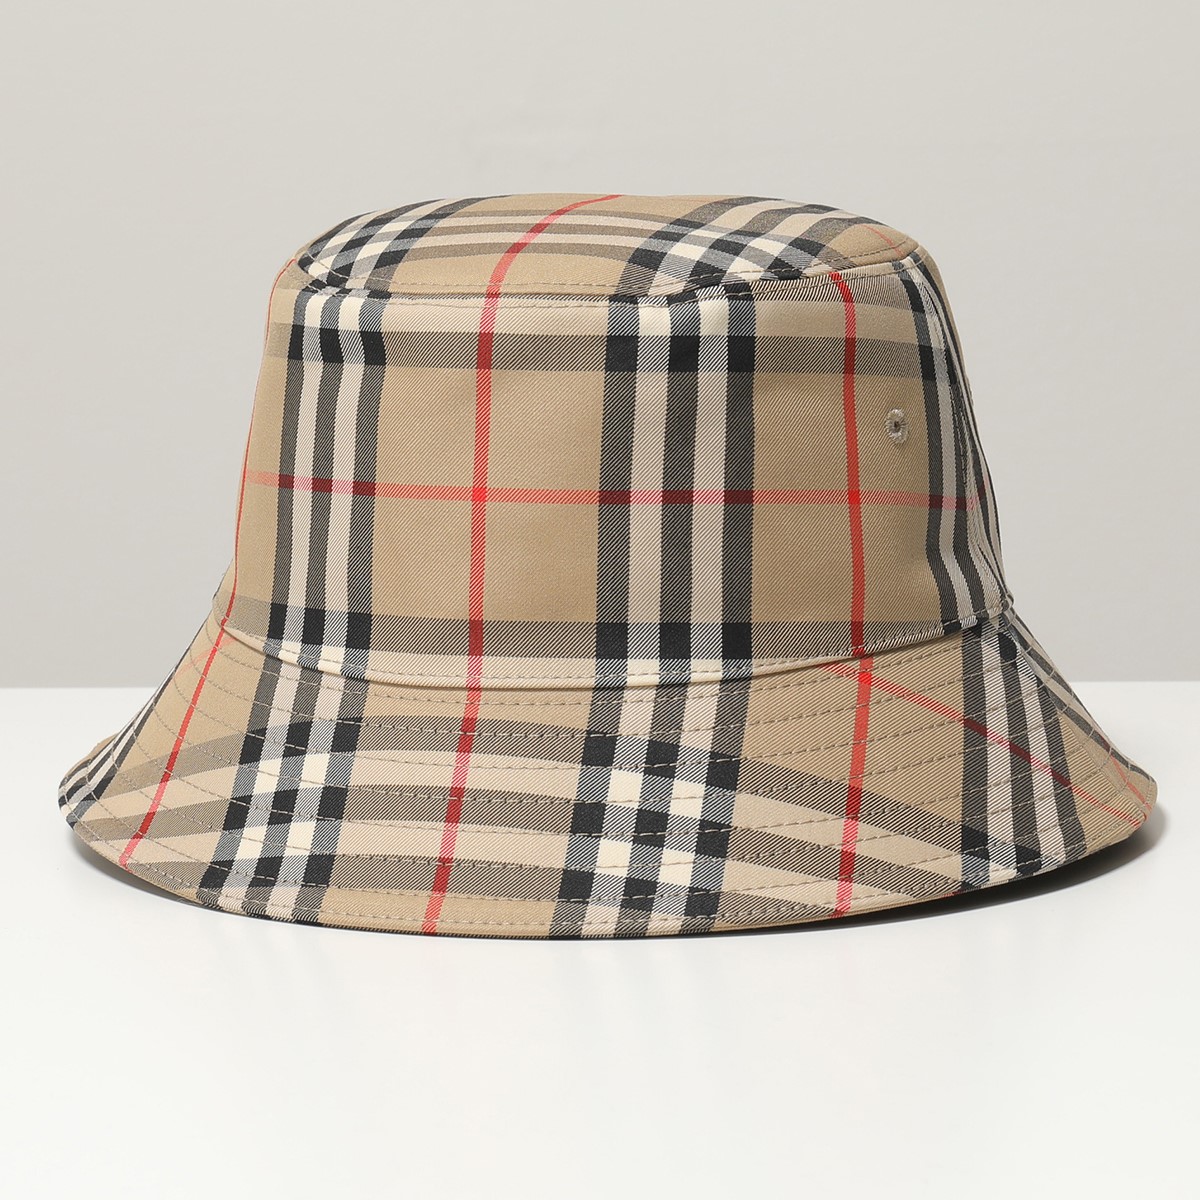 世界的に有名な バケットハット 帽子 L はちみつ様専用 BURBERRY